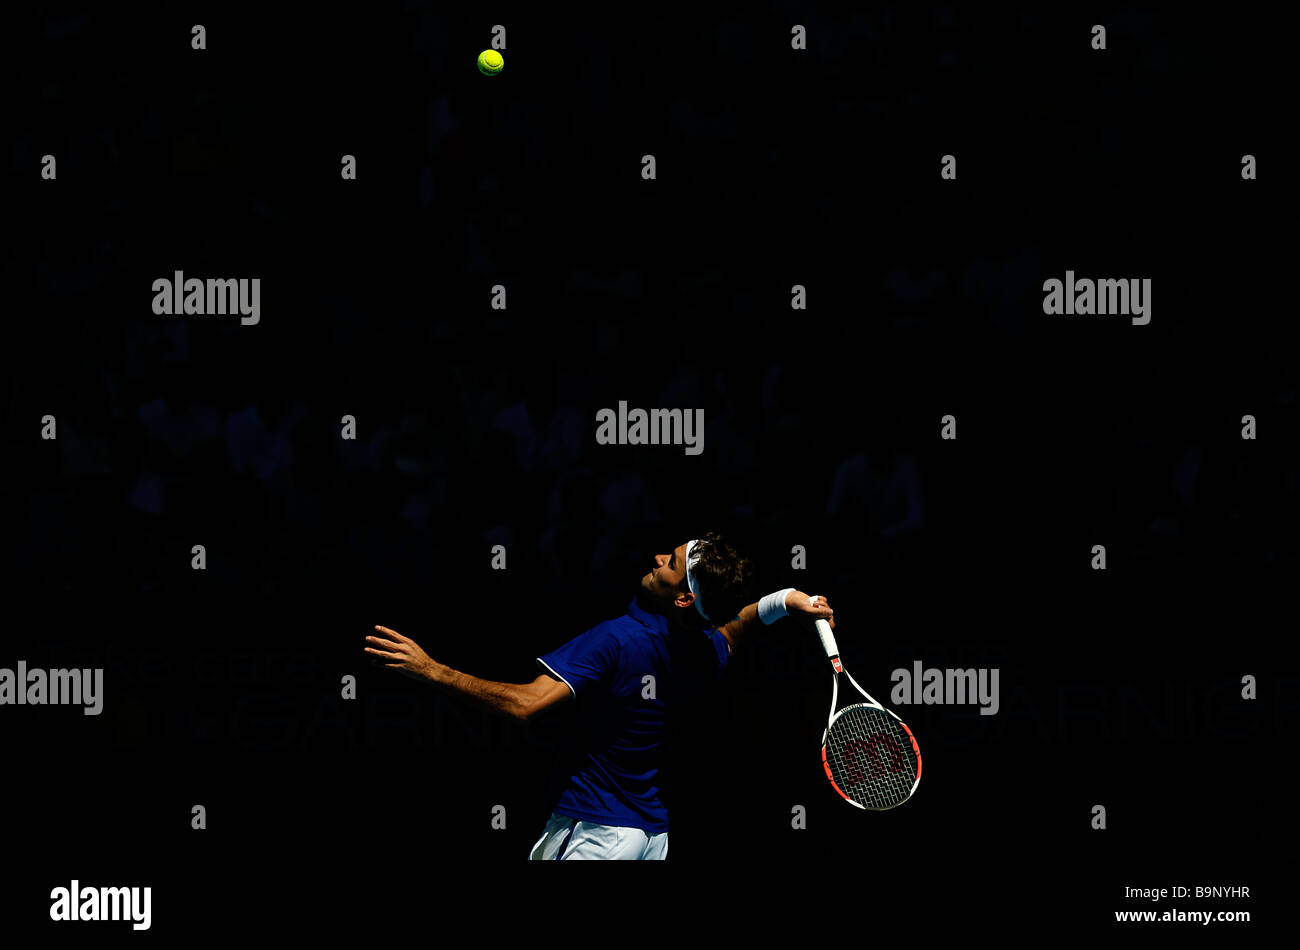 Roger Federer, légende suisse du tennis, lors de l'Open d'Australie Tennis Grand Chelem 2009 à Melbourne Banque D'Images